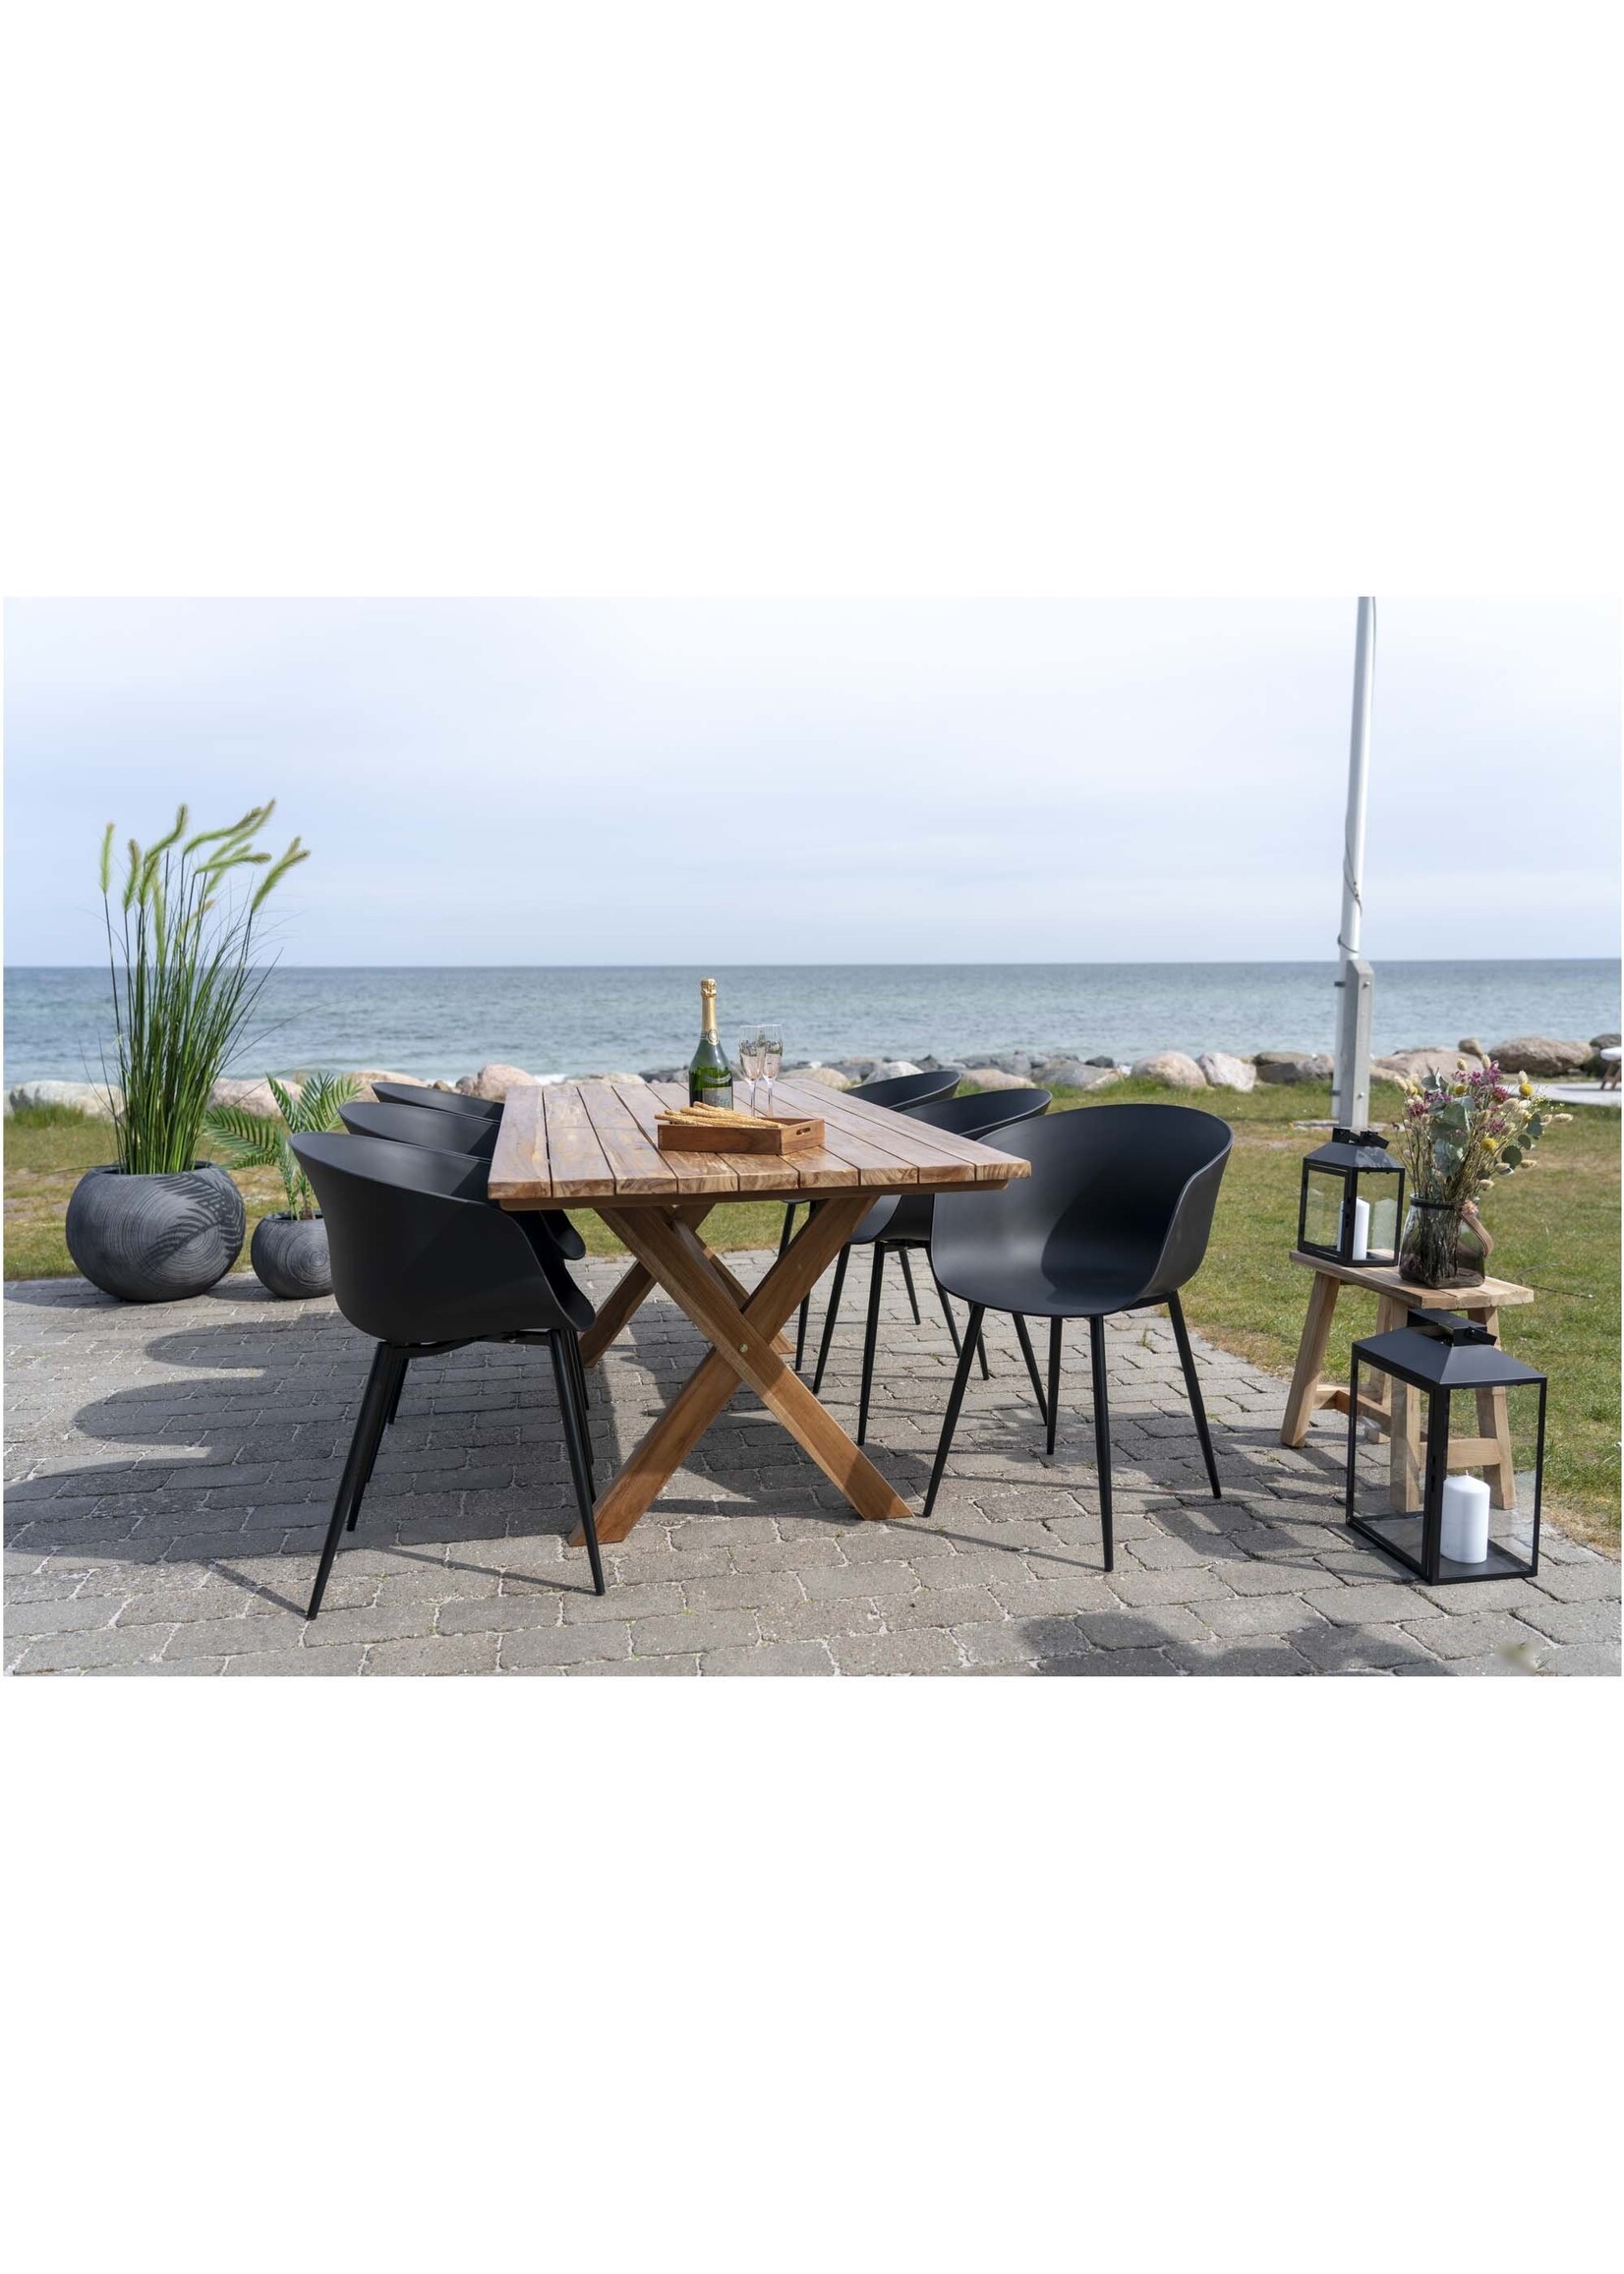 House Nordic Roda Dining Chair - Stoel in zwart met zwarte poten - set van 2